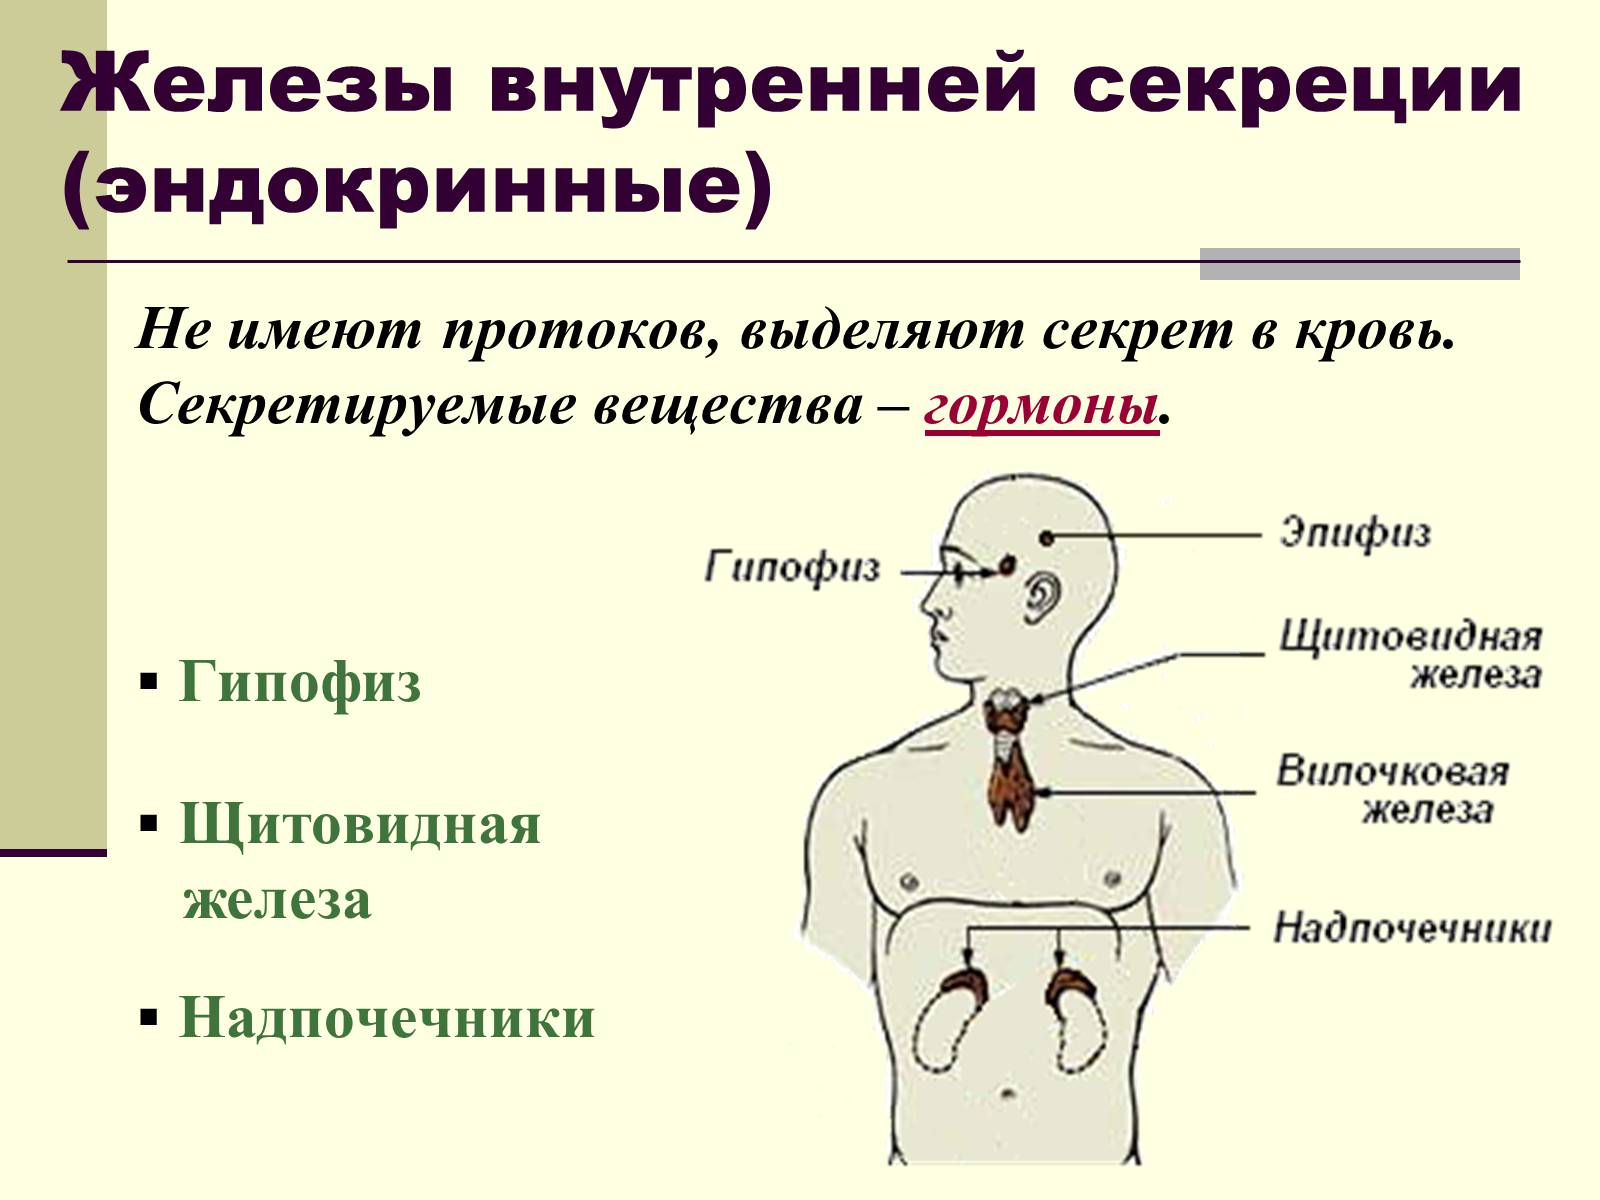 Железы внутренней секреции: гипофиз, надпочечники, щитовидная железа.